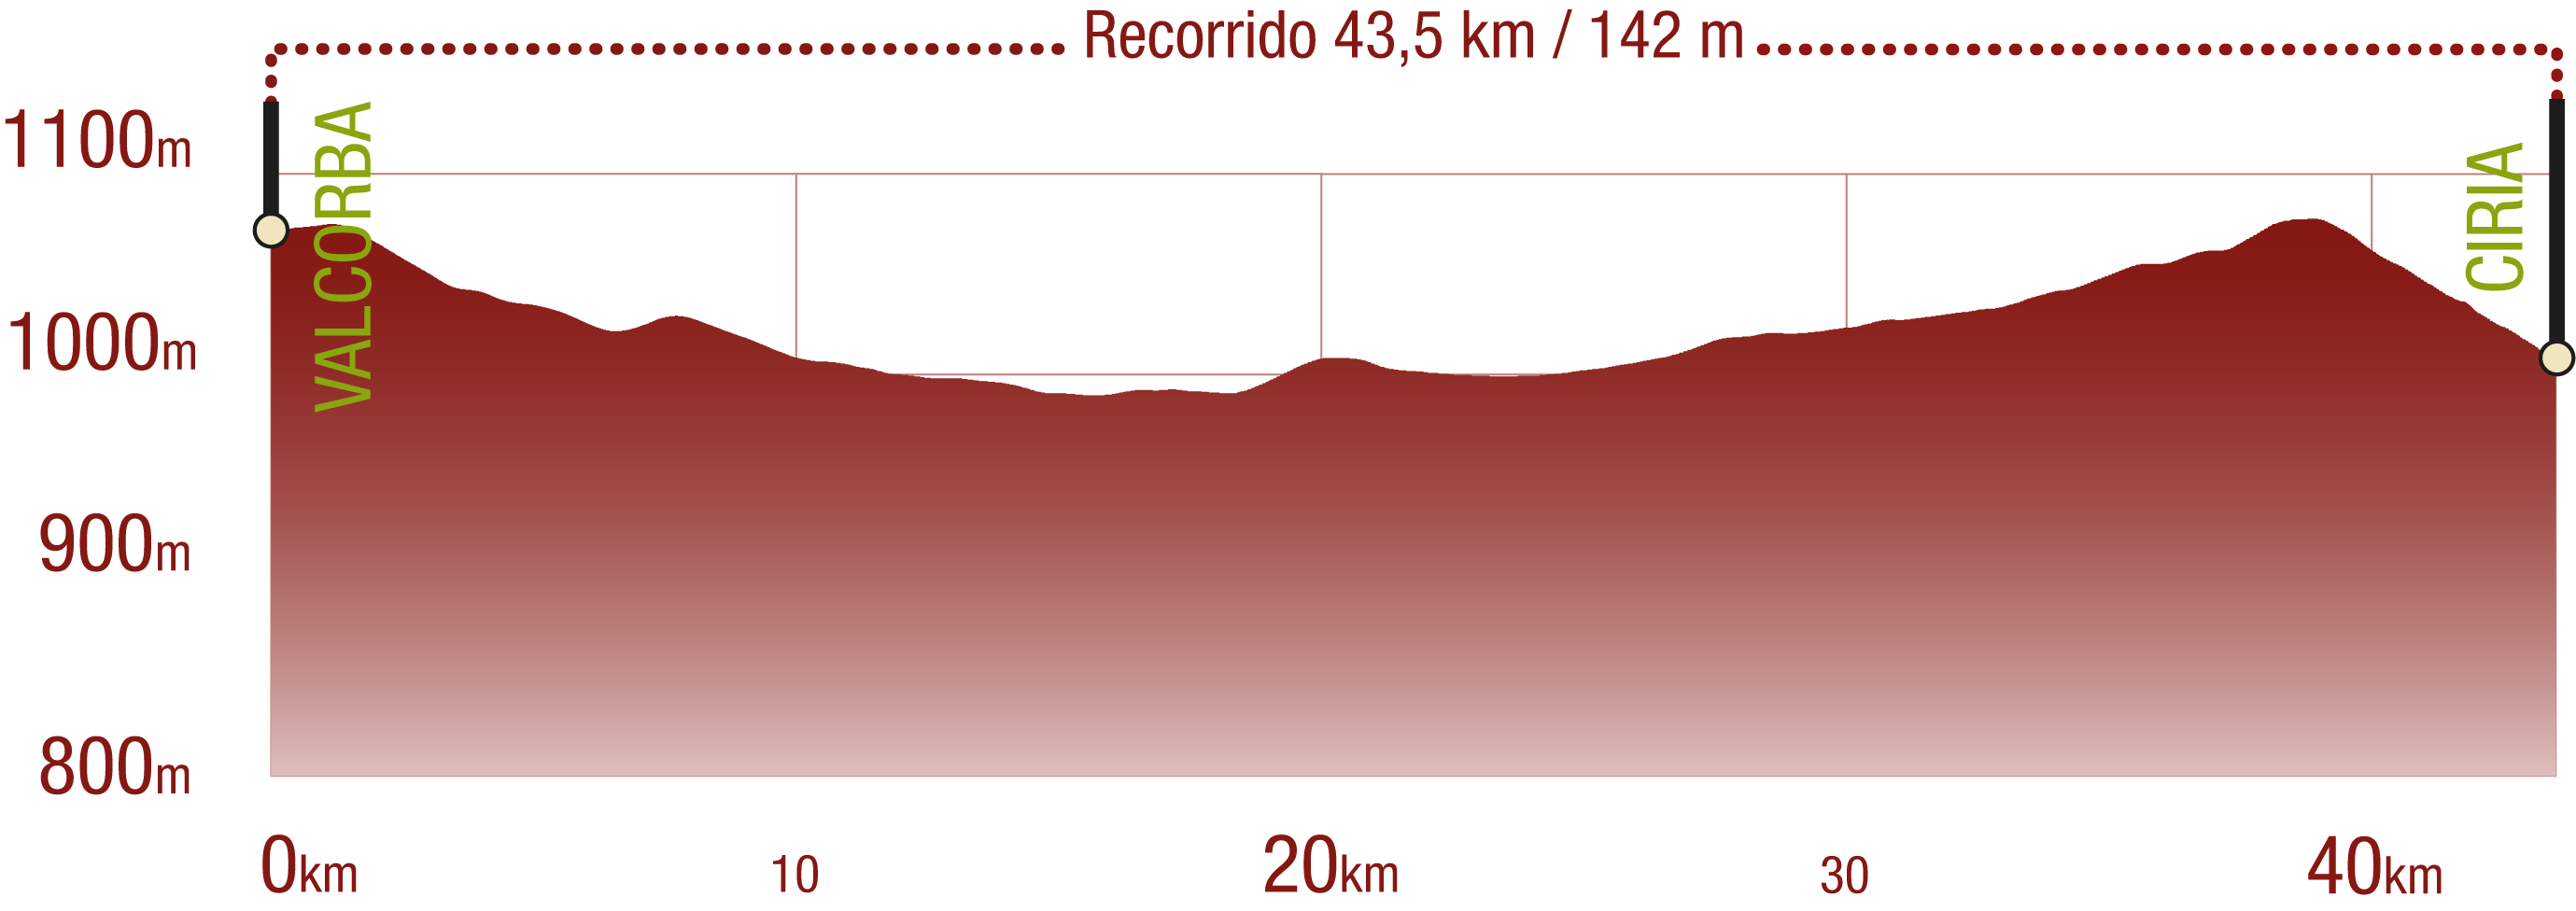 Perfil 
Perfil del recorrido del CN Santander Mediterráneo. Tramo Valcorba - Ciria: 43,5 km / Desnivel de subida 142 m


